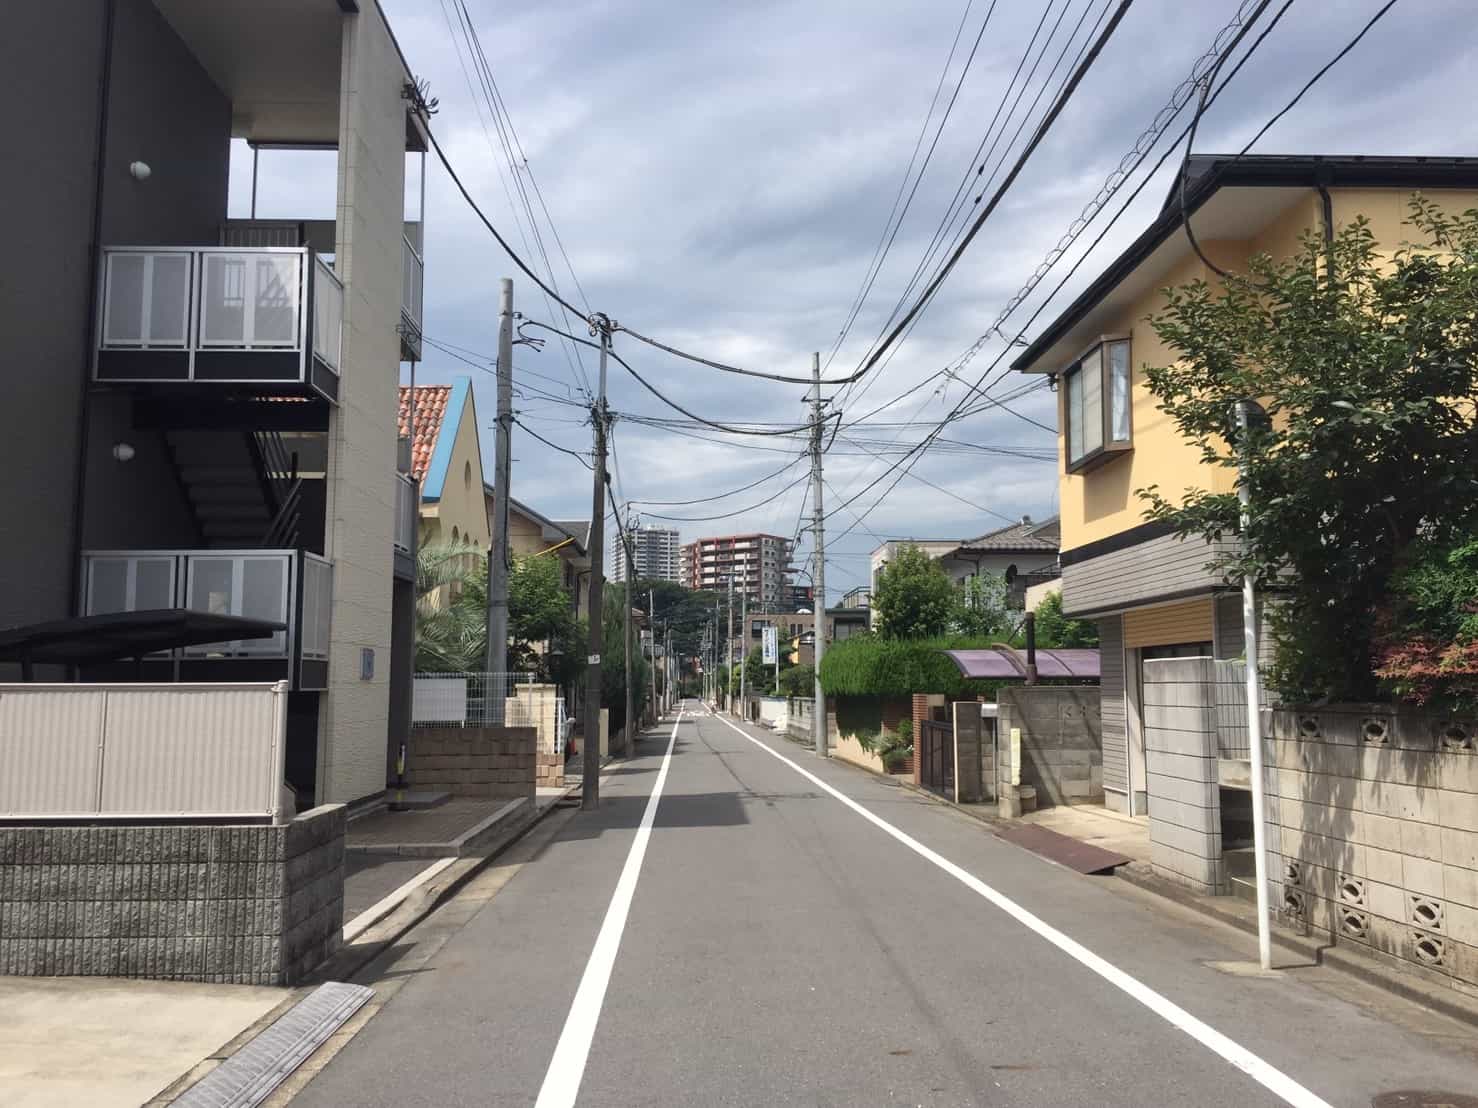 「さいたま新都心駅」から徒歩10分ほど離れた住宅街